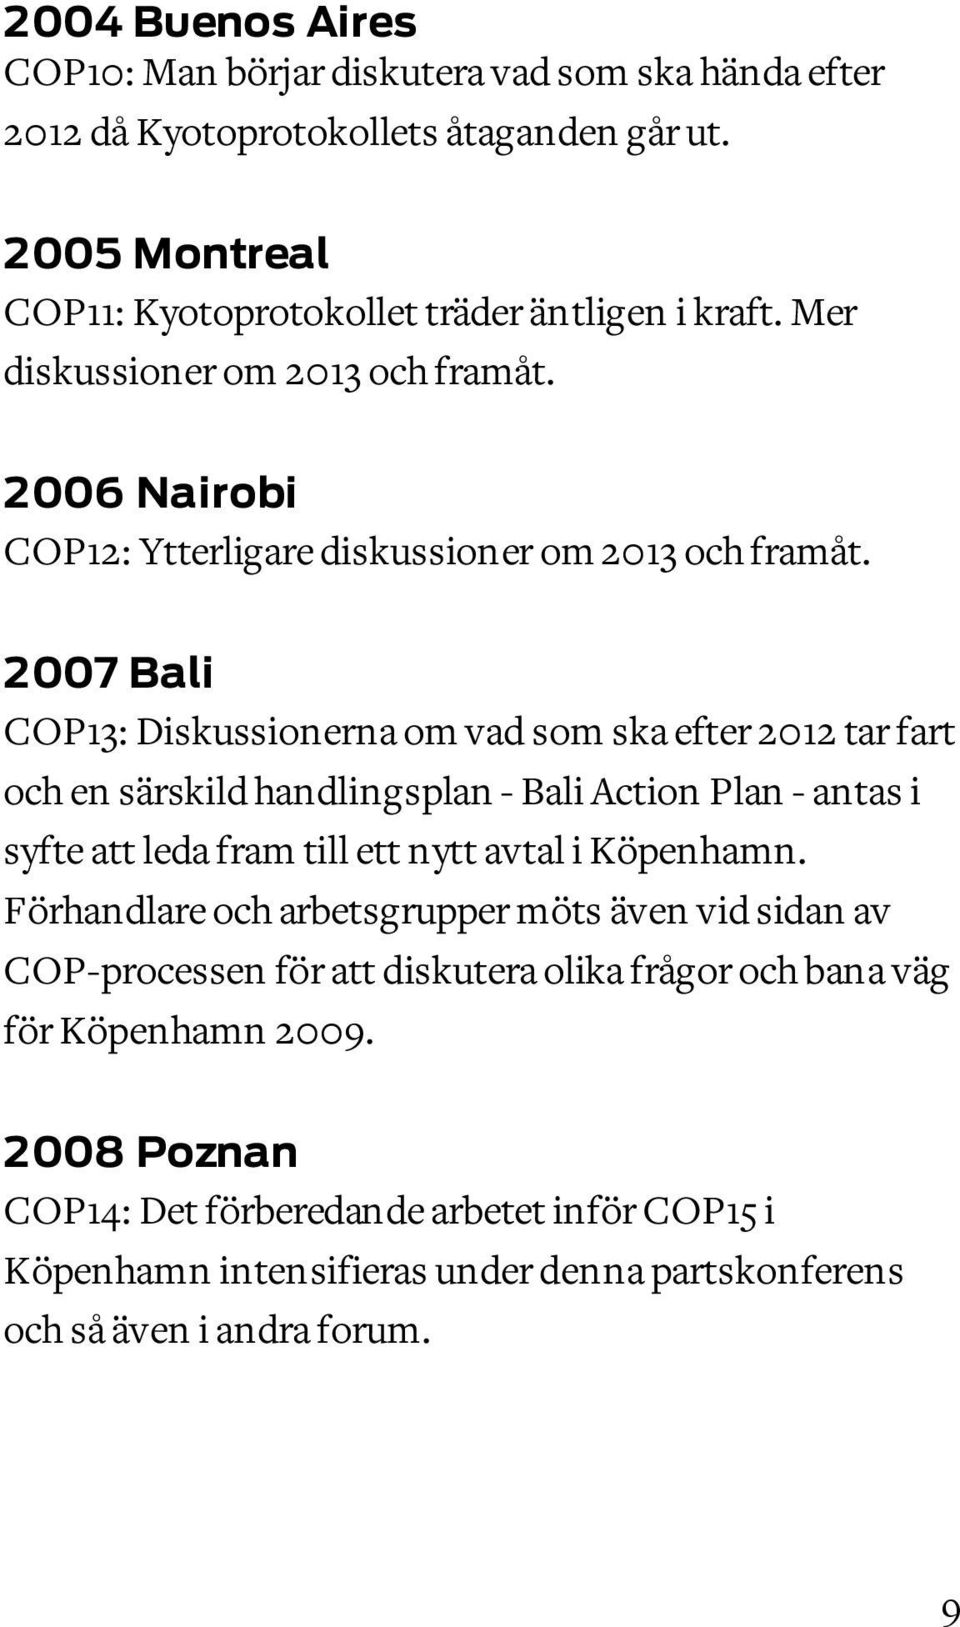 2007 Bali COP13: Diskussionerna om vad som ska efter 2012 tar fart och en särskild handlingsplan - Bali Action Plan - antas i syfte att leda fram till ett nytt avtal i Köpenhamn.